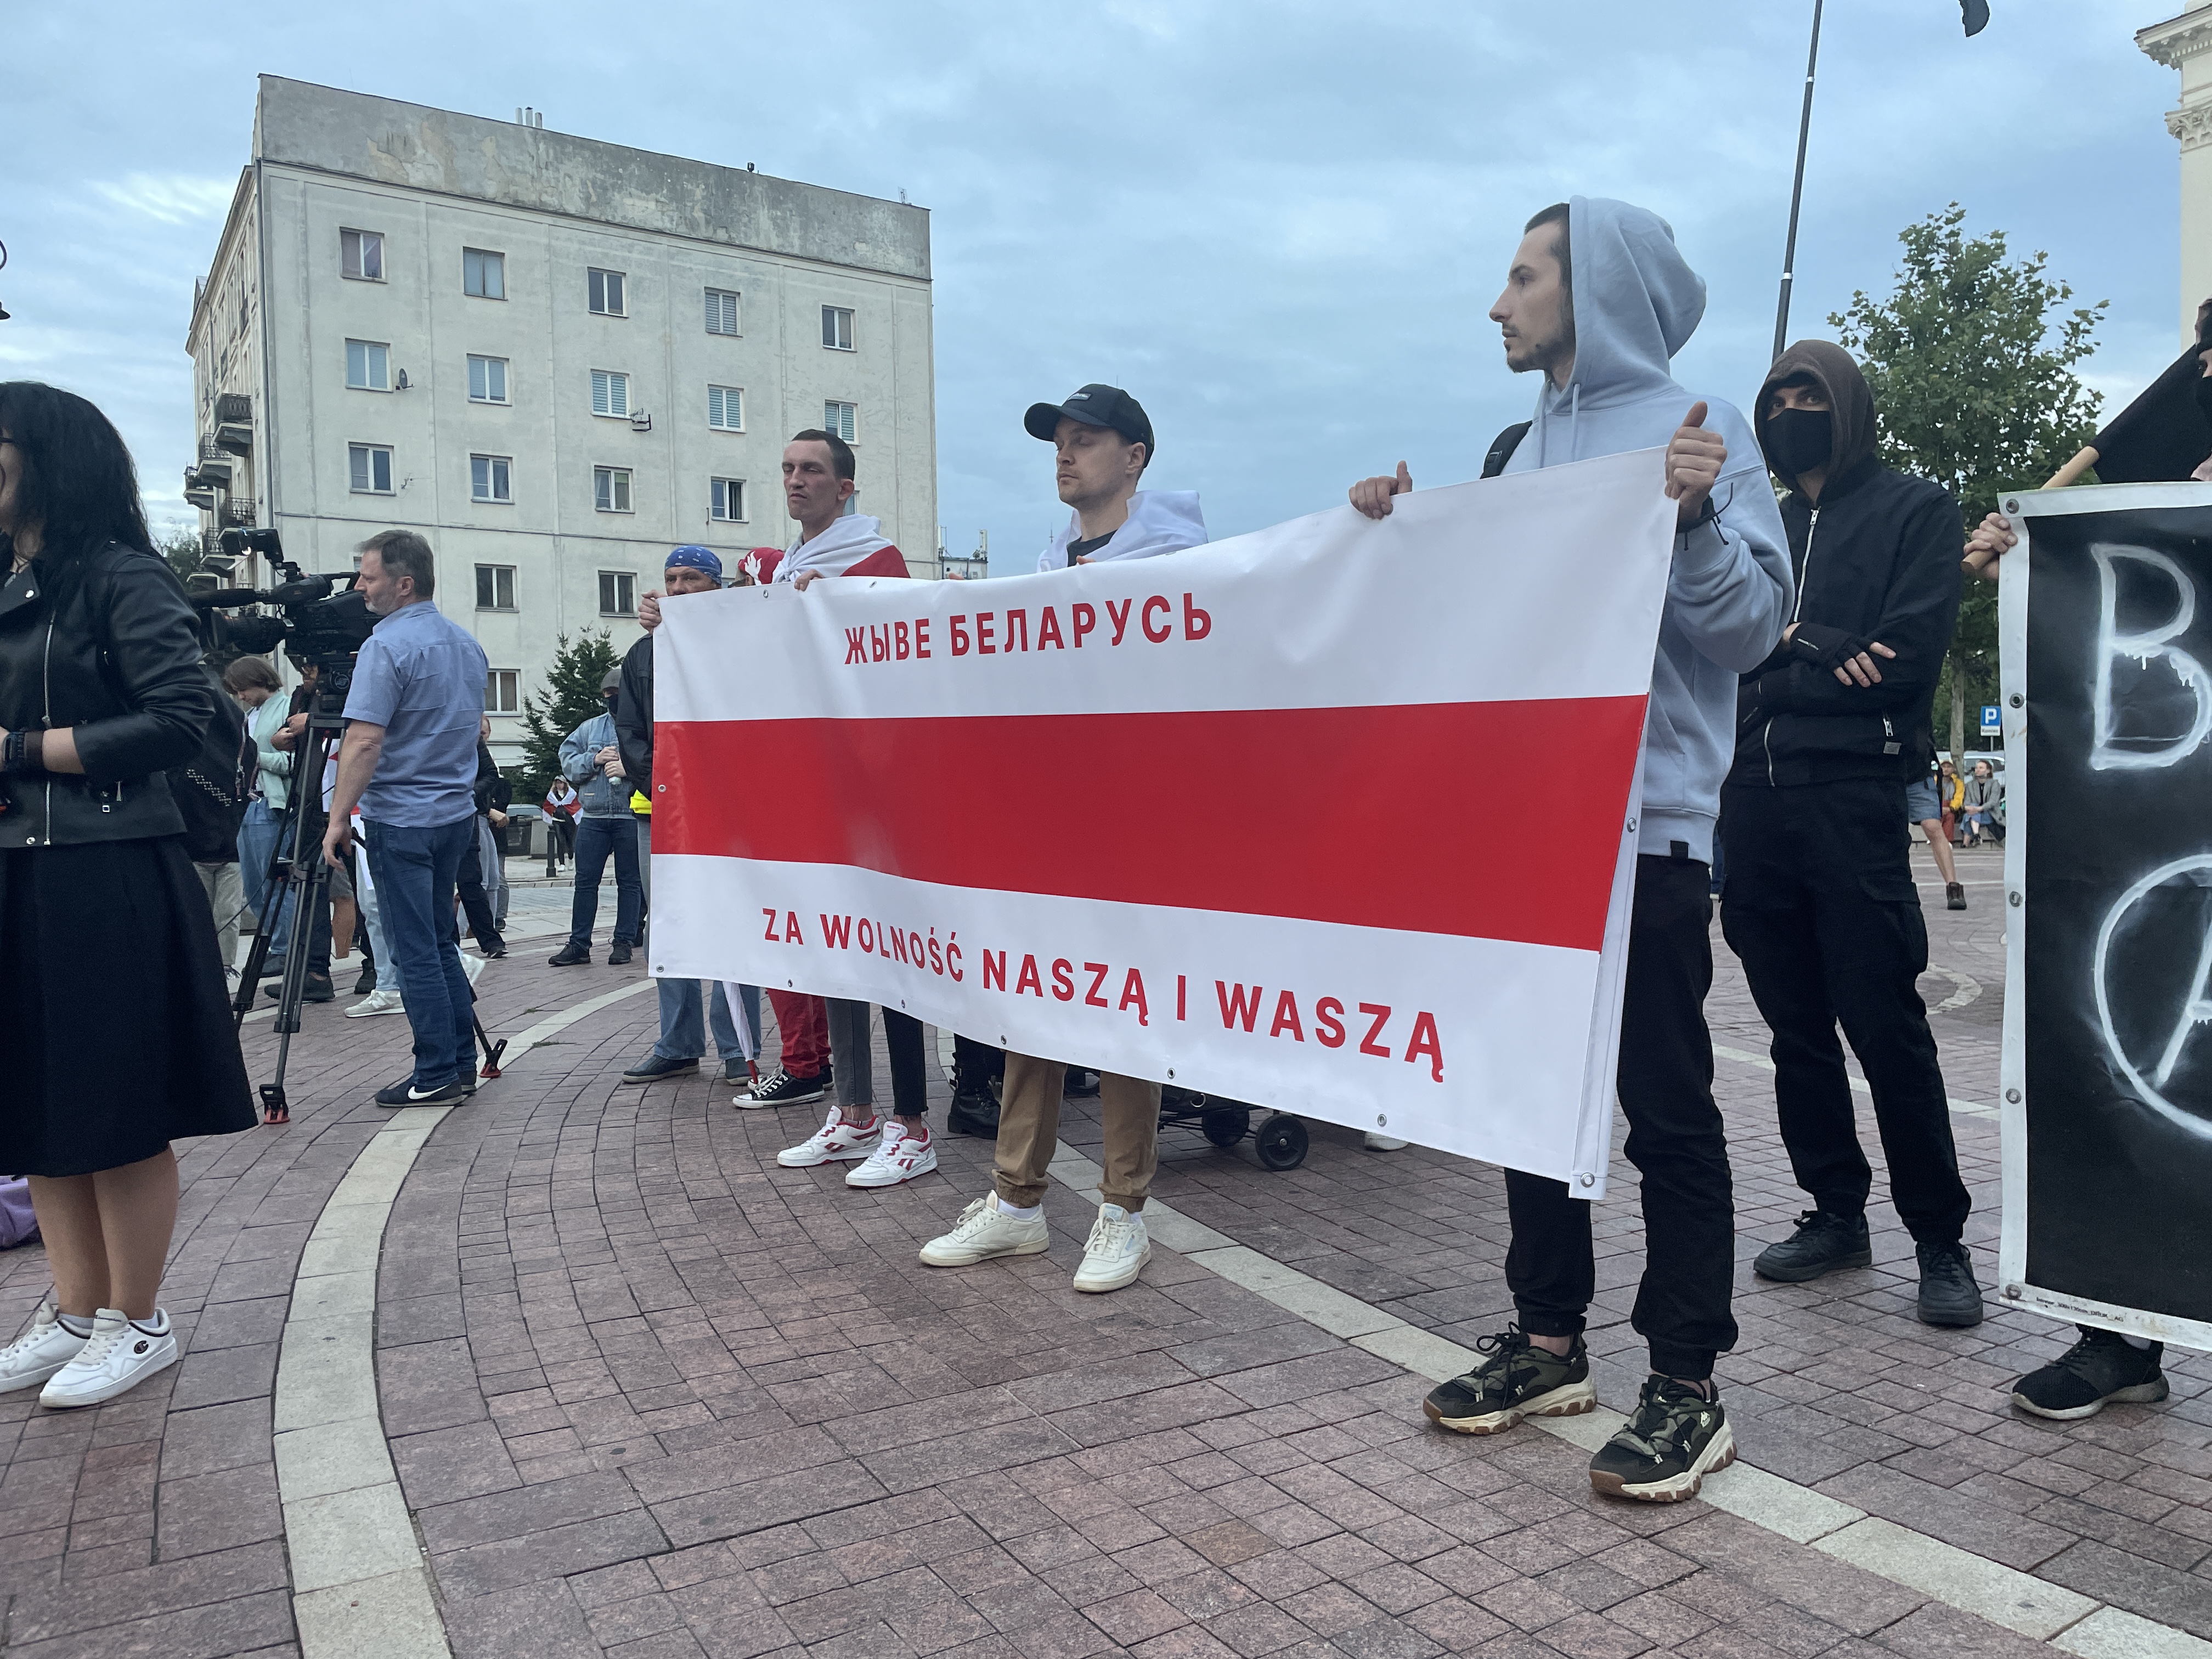 aa-20230809-31885472-31885467-varsovada-bir-araya-gelen-belaruslular-2020-cumhurbaskani-secimlerini-protesto-etti.jpg